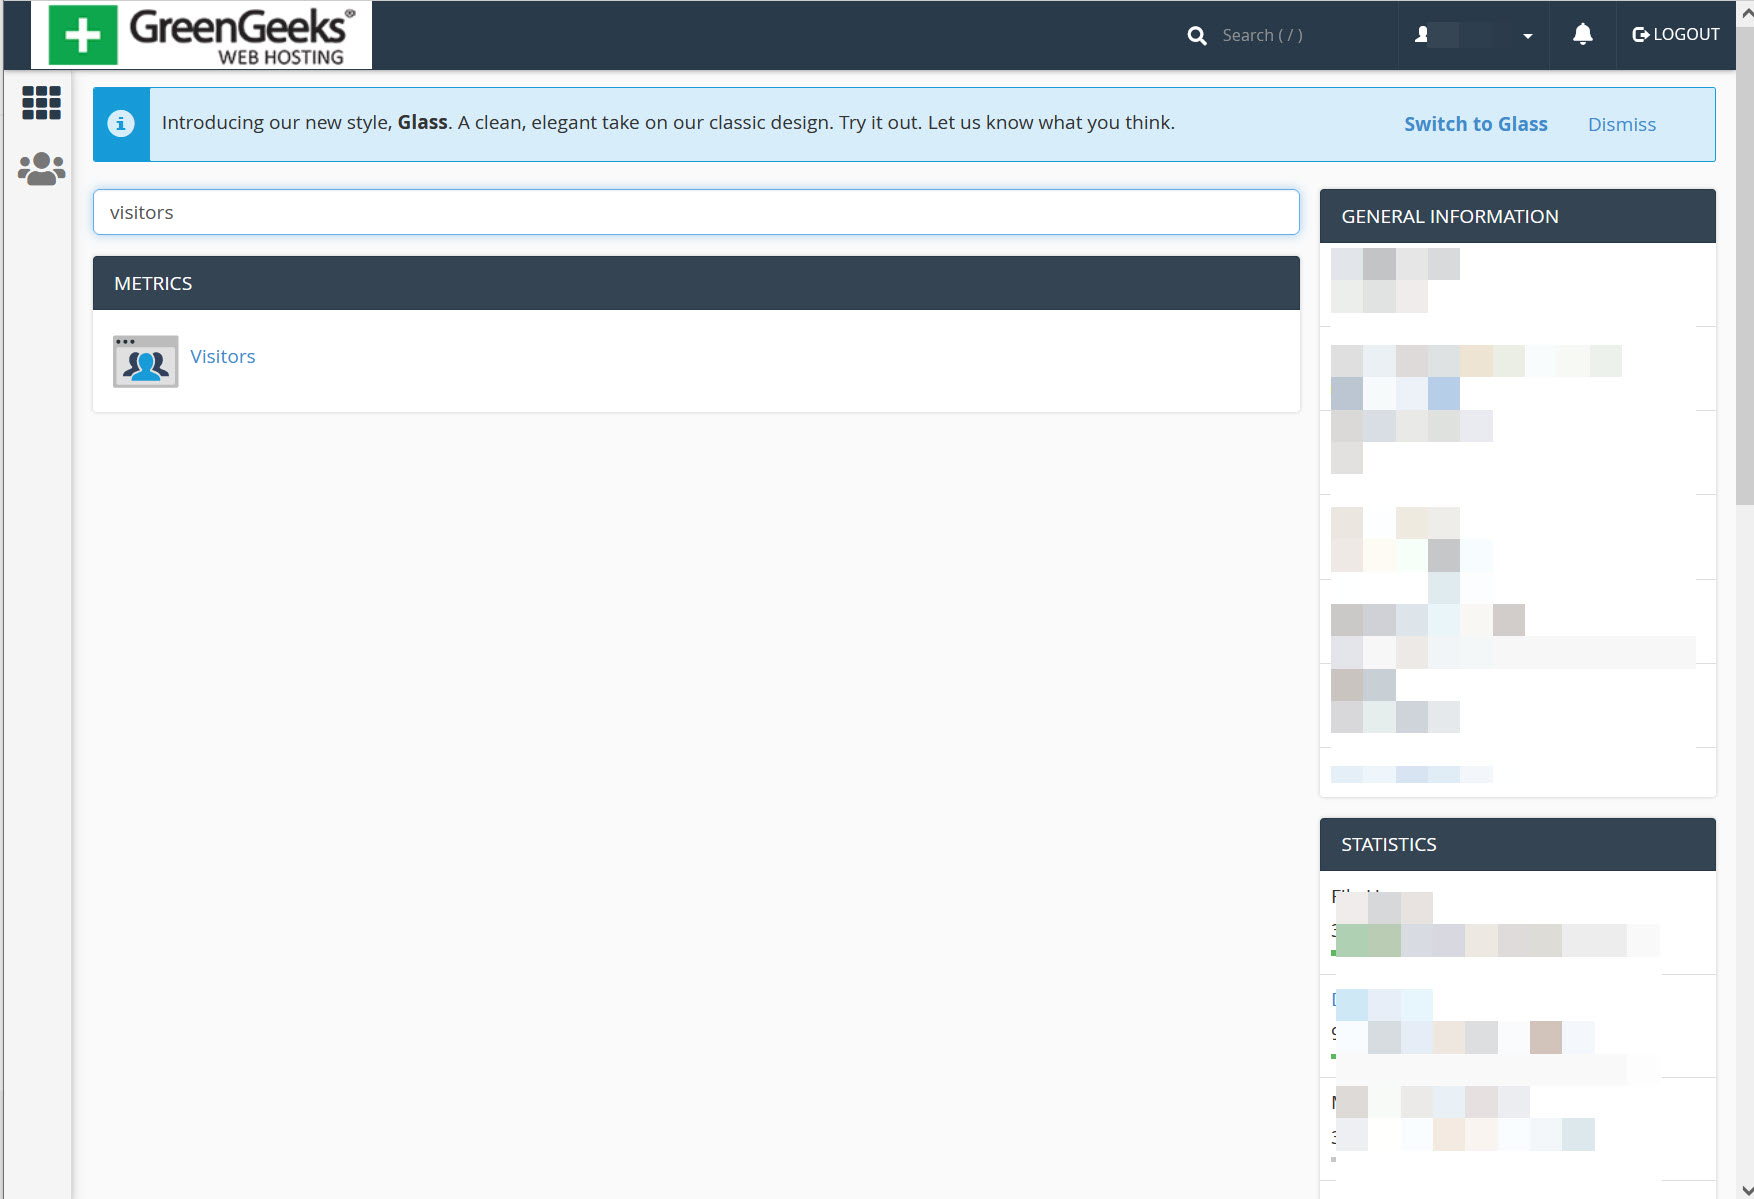 블루호스트에서 최근 방문자 IP 주소 확인하는 방법 (cPanel) - GreenGeeks 호스팅의 Visitors 툴